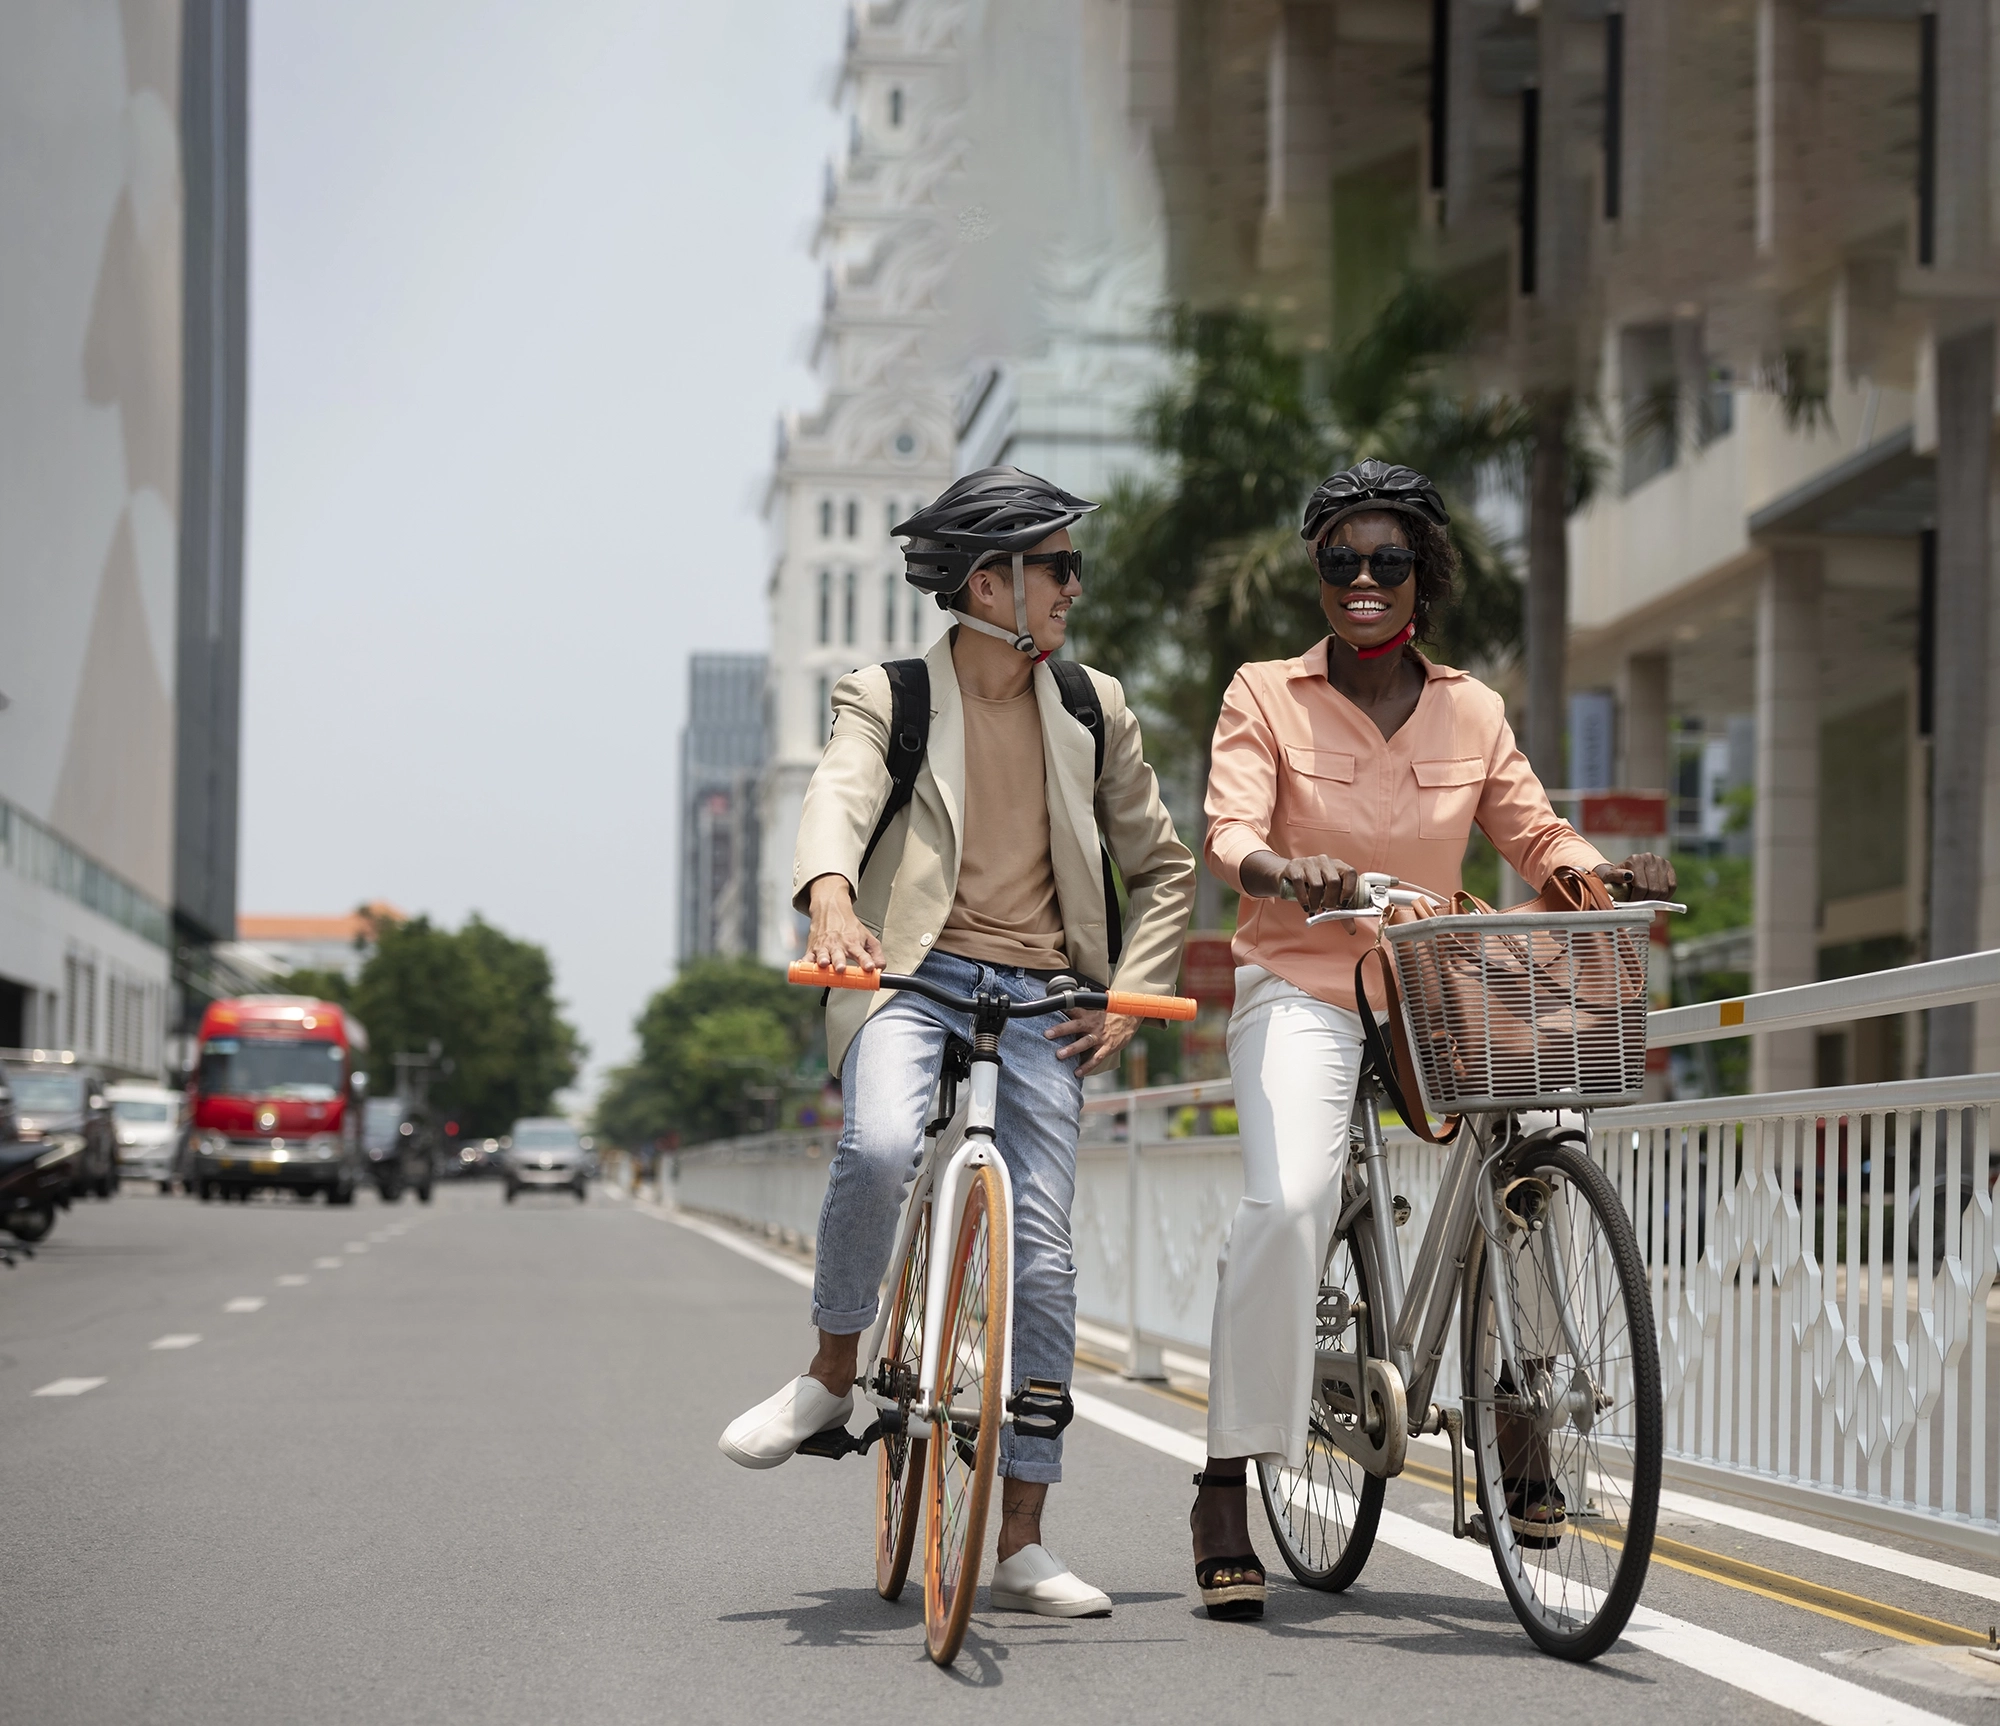 Dans une rue un homme caucasien et une femme africaine discutent chacun sur un vélo. Ils ont tous les deux des casques de sécurité et des lunettes de soleil. L'homme a un vélo blanc avec des roue oranges et la femme un vélo gris avec un panier dans lequel est posé son sac à main.